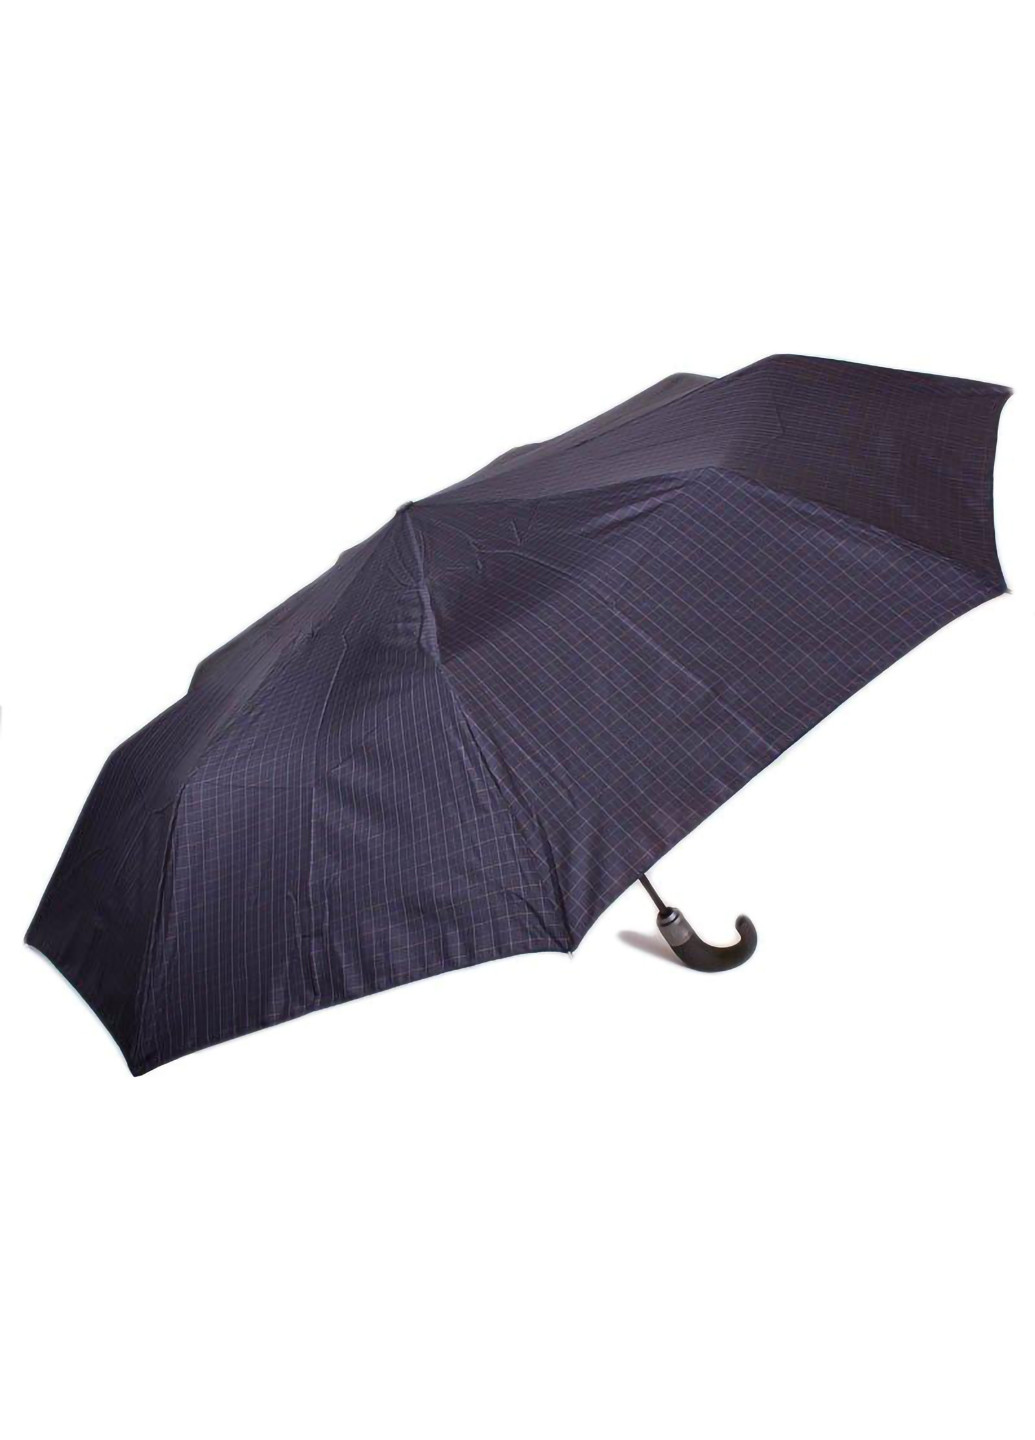 Мужской складной зонт автомат 107 см Zest (255709590)